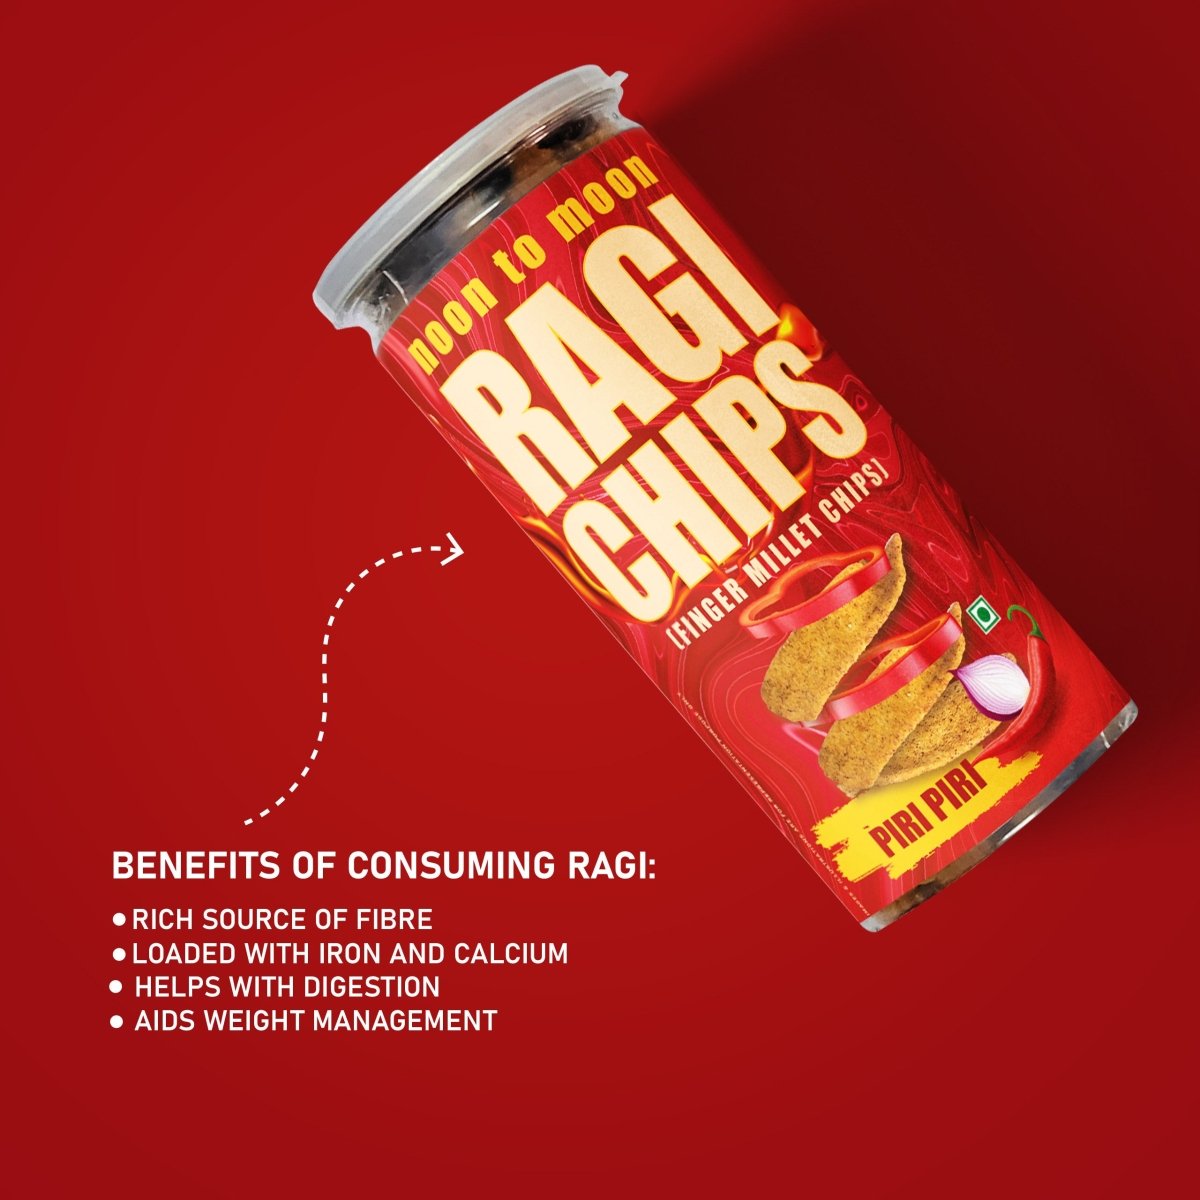 
                  
                    Ragi Chips-Piri Piri (150g) - Kreate- Munchies
                  
                